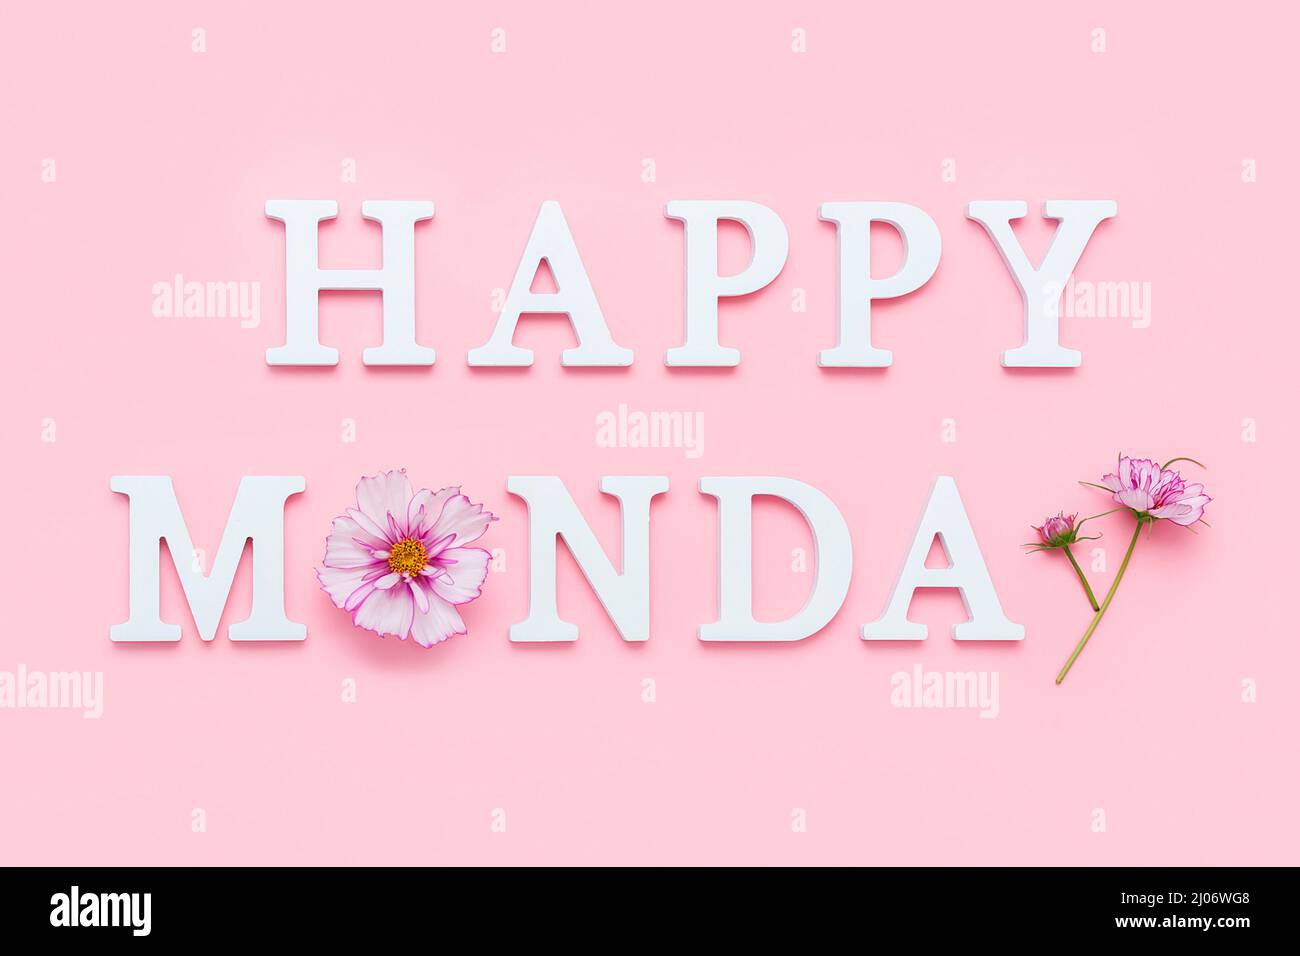 Froher Montag. Motivationszitat aus weißen Buchstaben und Schönheit natürliche Blumen auf rosa Hintergrund. Kreatives Konzept Hallo Montag, positive Stimmung. Stockfoto